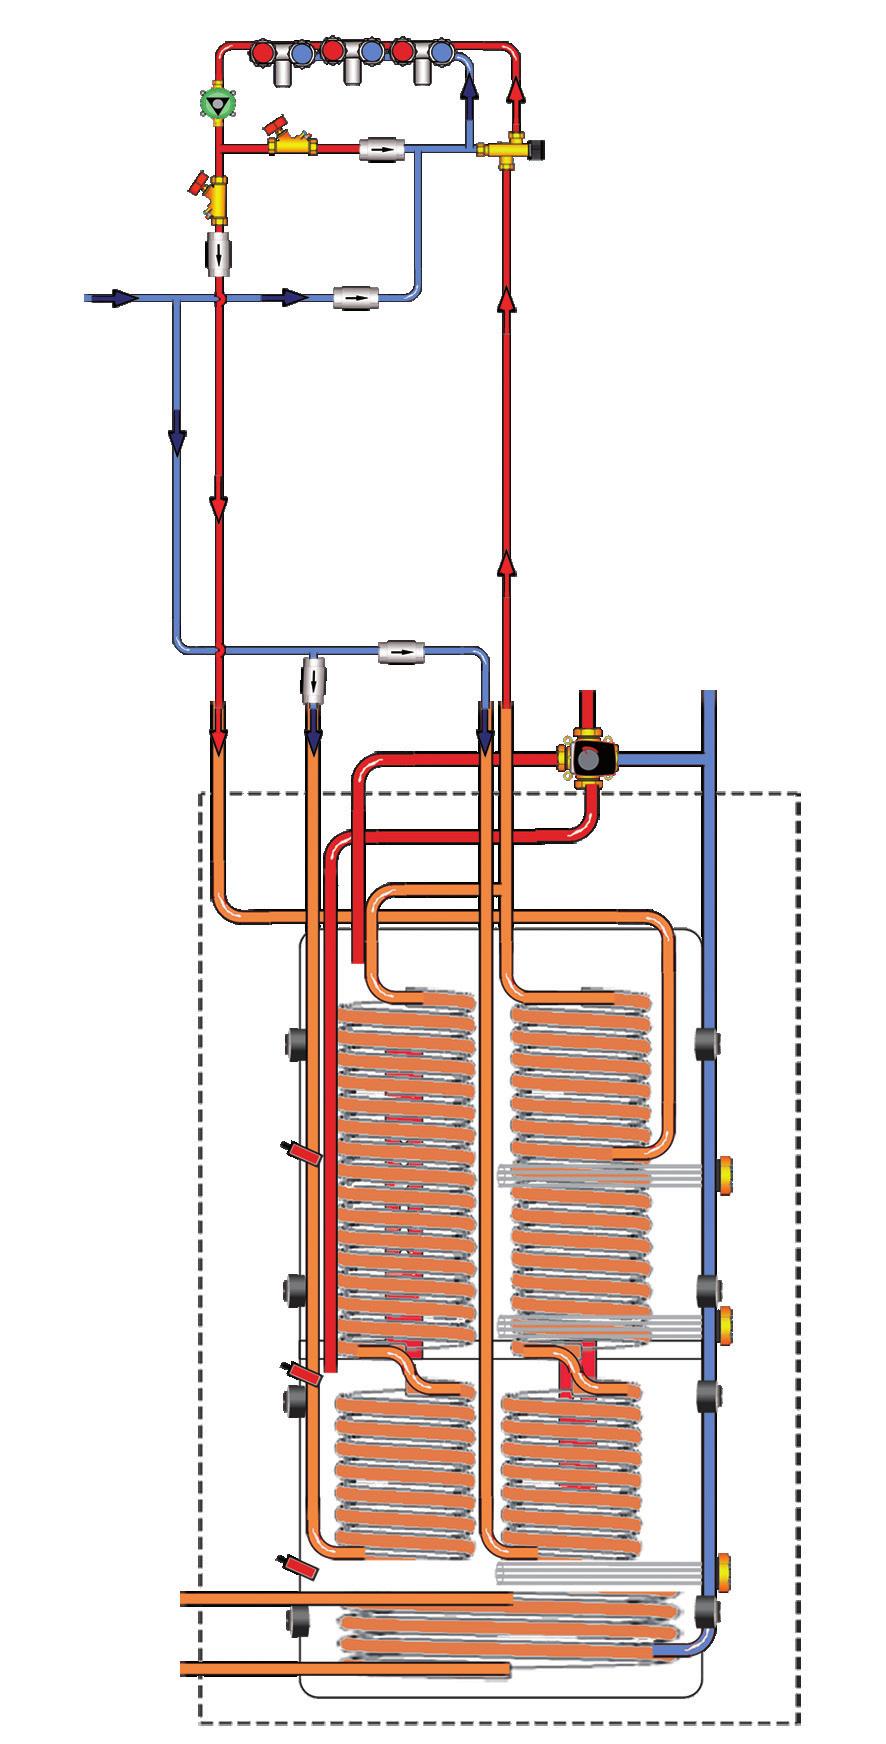 3.2 Varmtvann I den øvre delen tanken foregår sluttoppvarmingen av forbruksvannet, samt at den fungerer som spiss for varmesystemet når den nedre delen av tanken ikke strekker til.